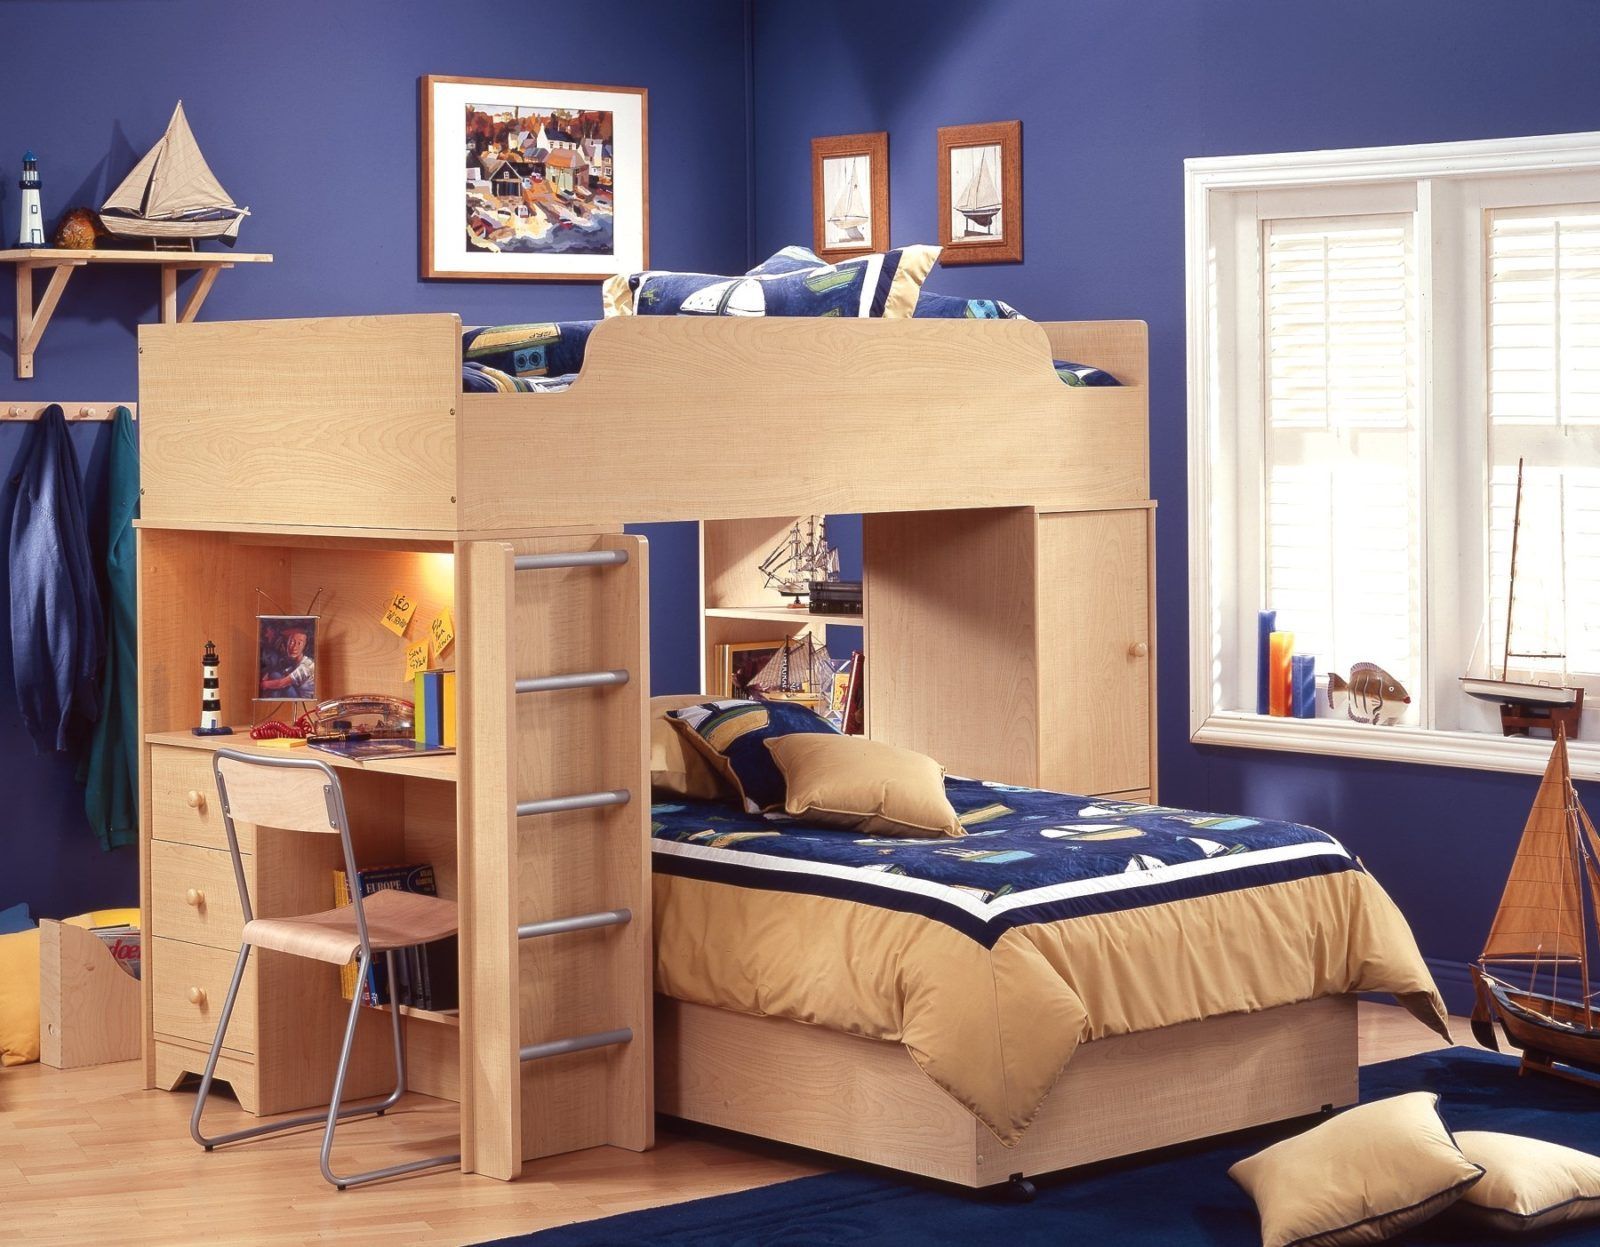 Дизайн детской комнаты для близнецов подборка вариантов Детская комната для мальчика фотоподборка